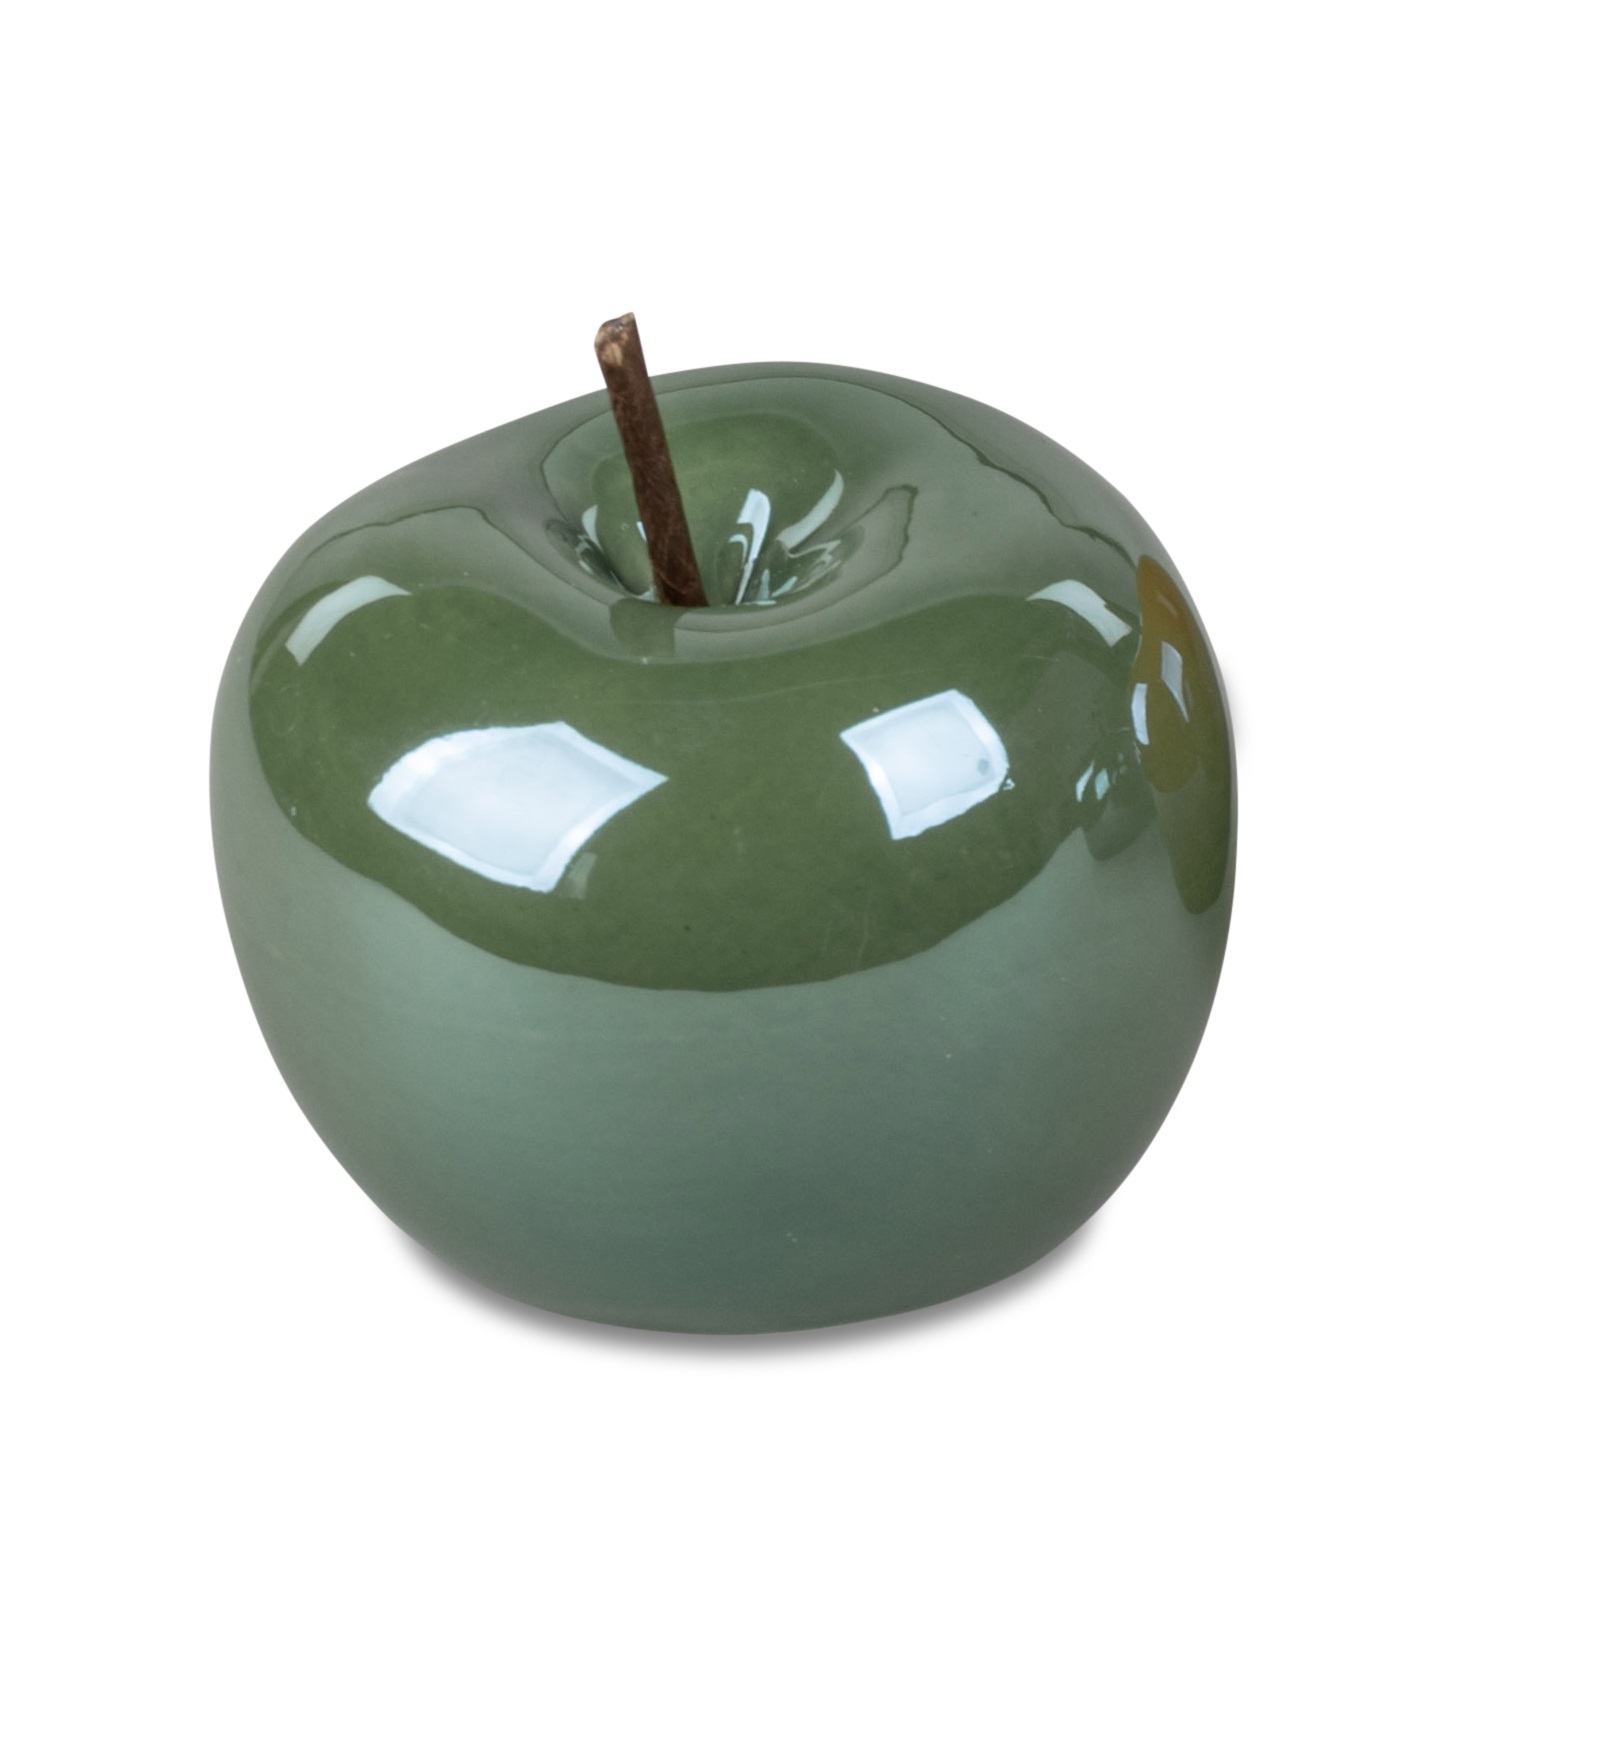 Deko-Objekt Apfel 10 cm Lüster Trend grün Deko Apfel Tischdekor Formano